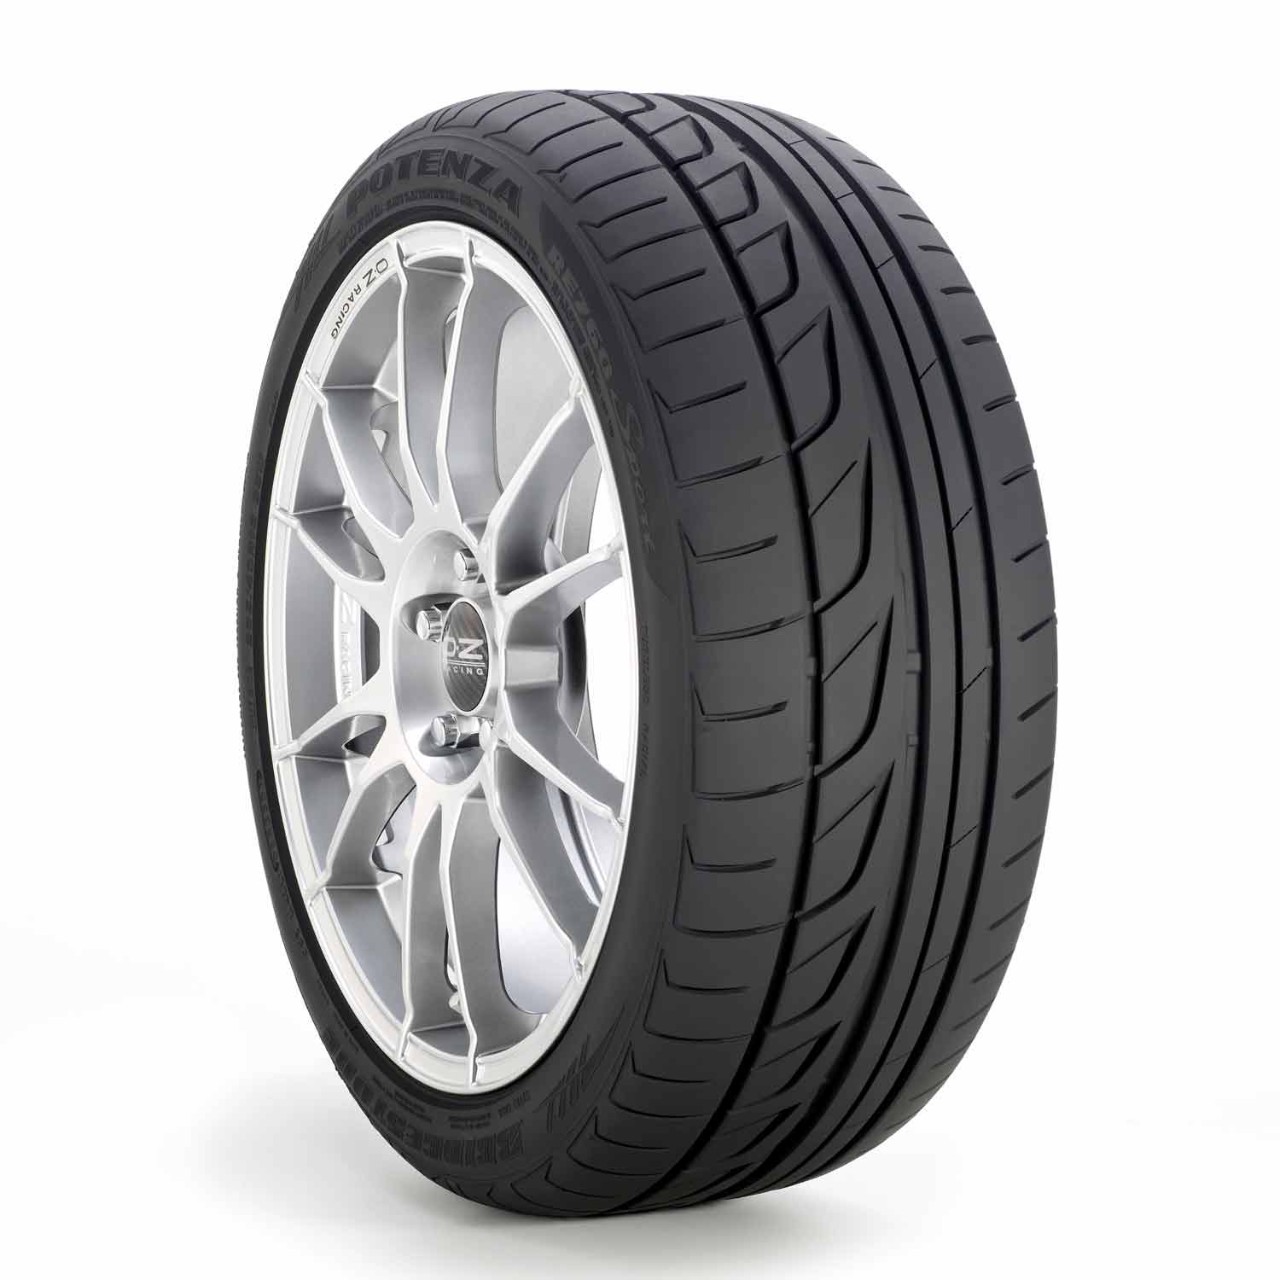 Pneu Bridgestone POTENZA RE760 SPORT | Pneus Bridgestone Em Promoção